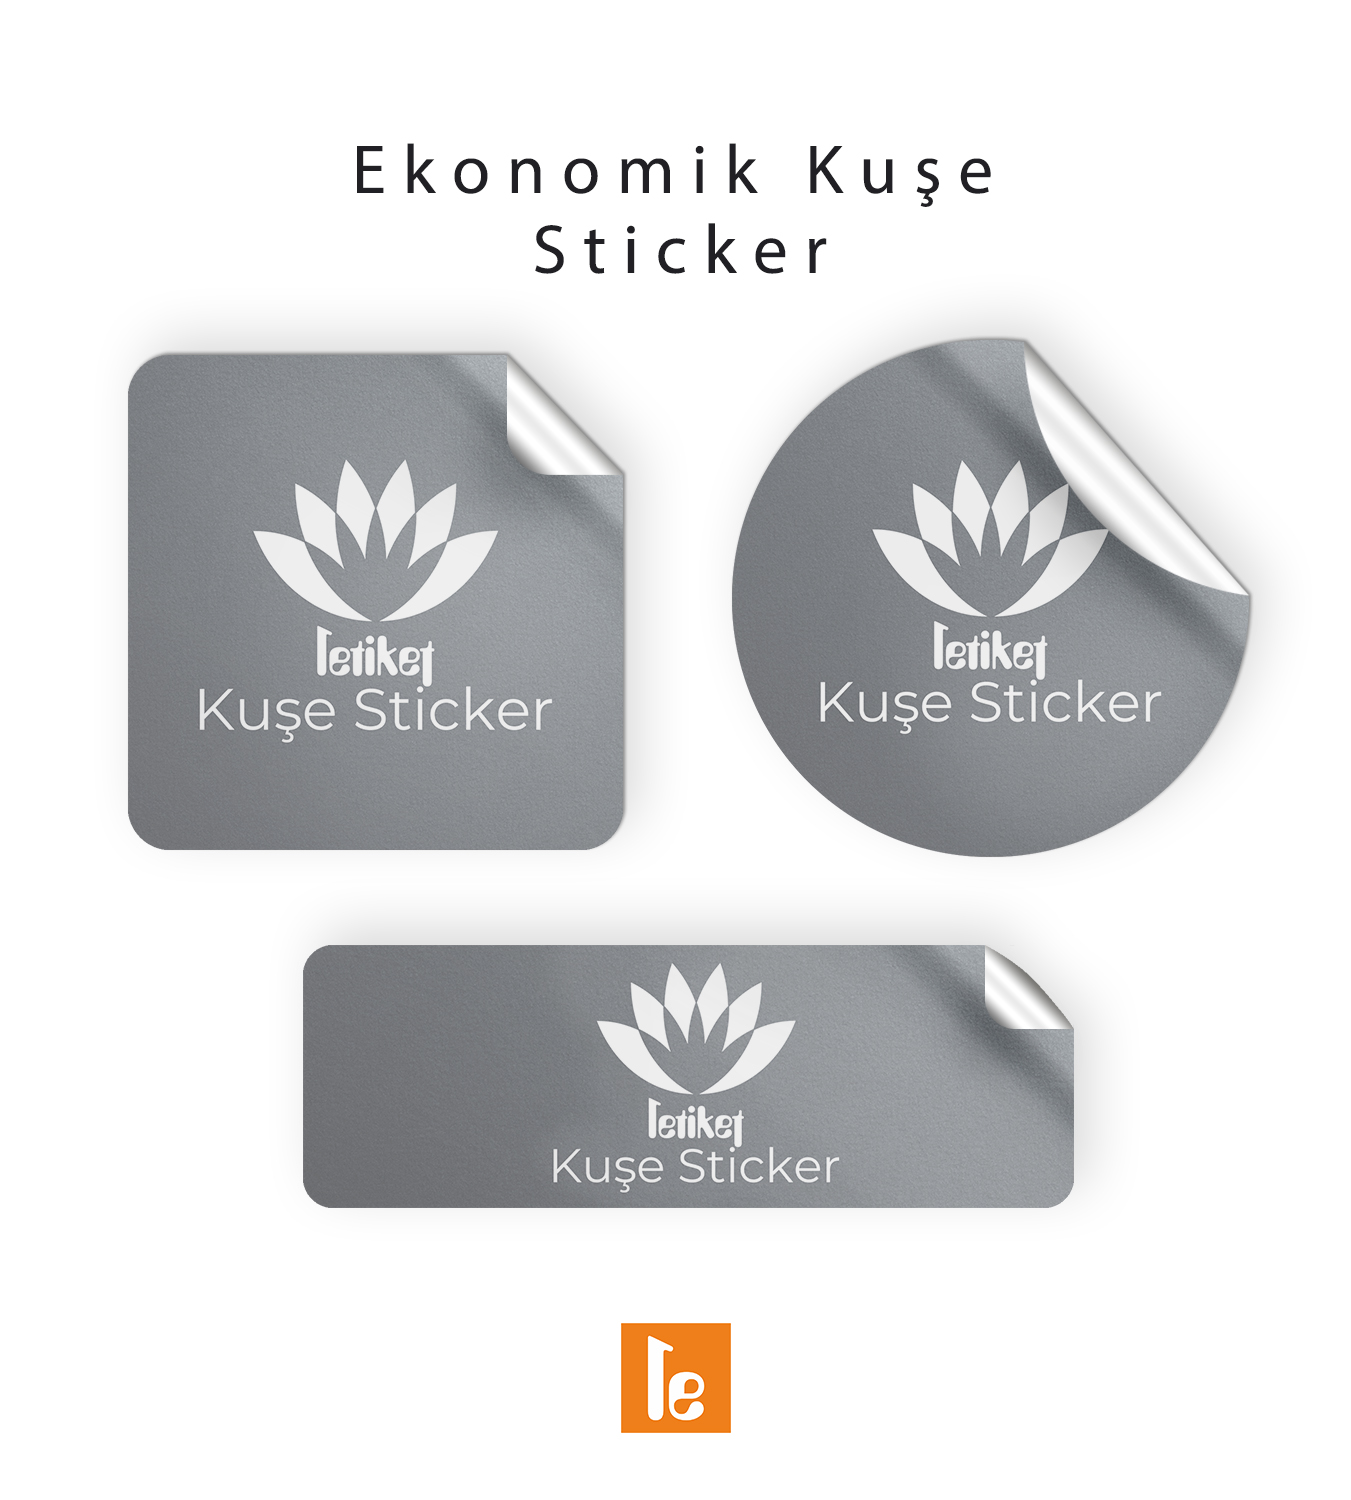 15.6×16.4 cm Ekonomik Düz Kesim Sticker/Etiket